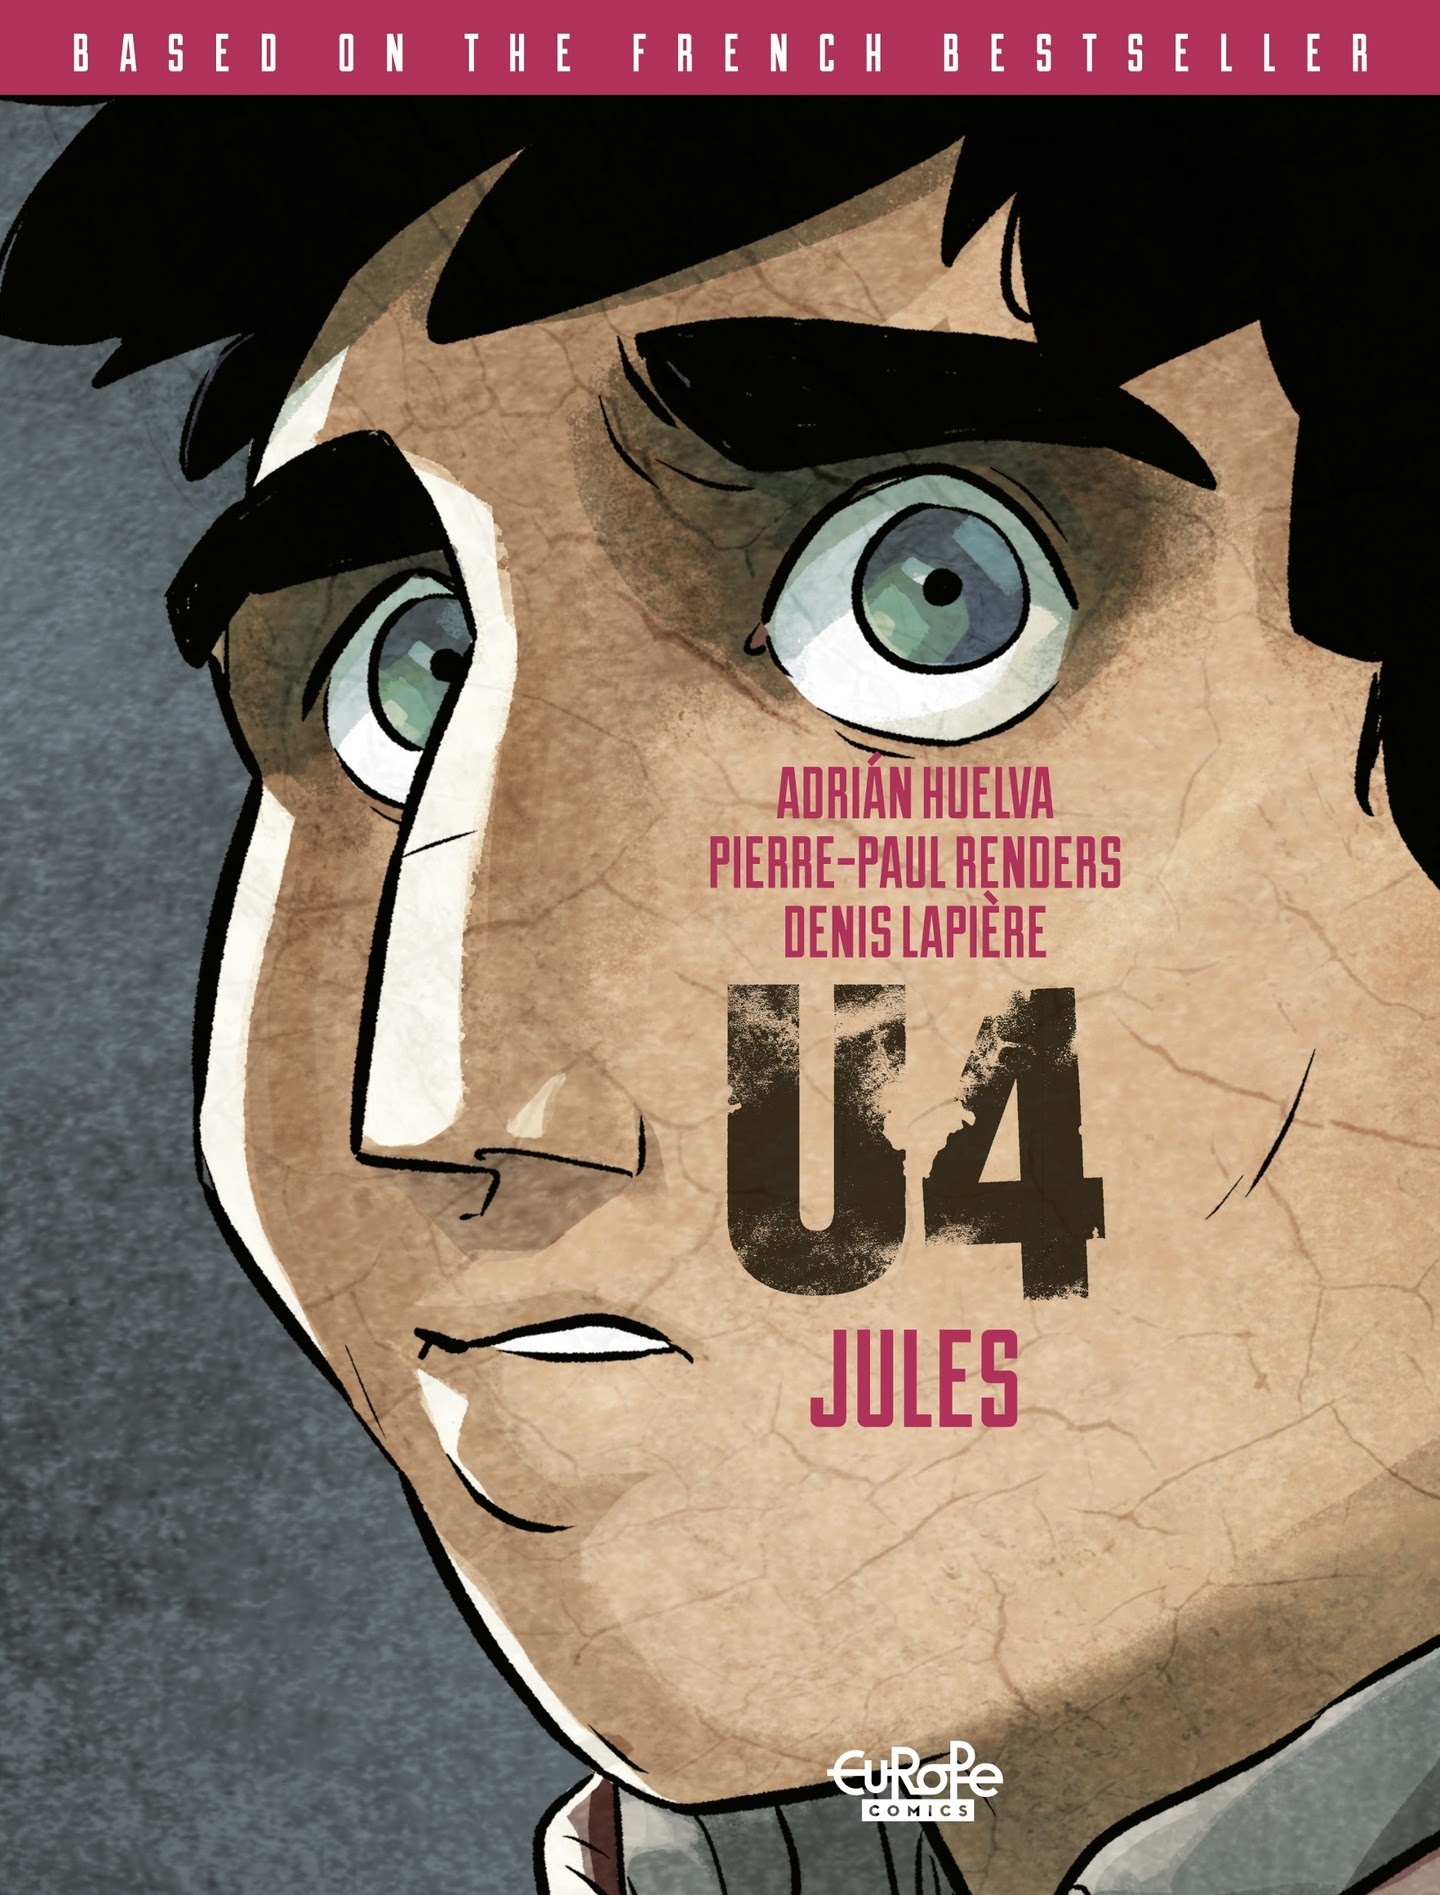 Read online U4: Jules comic -  Issue # TPB - 1